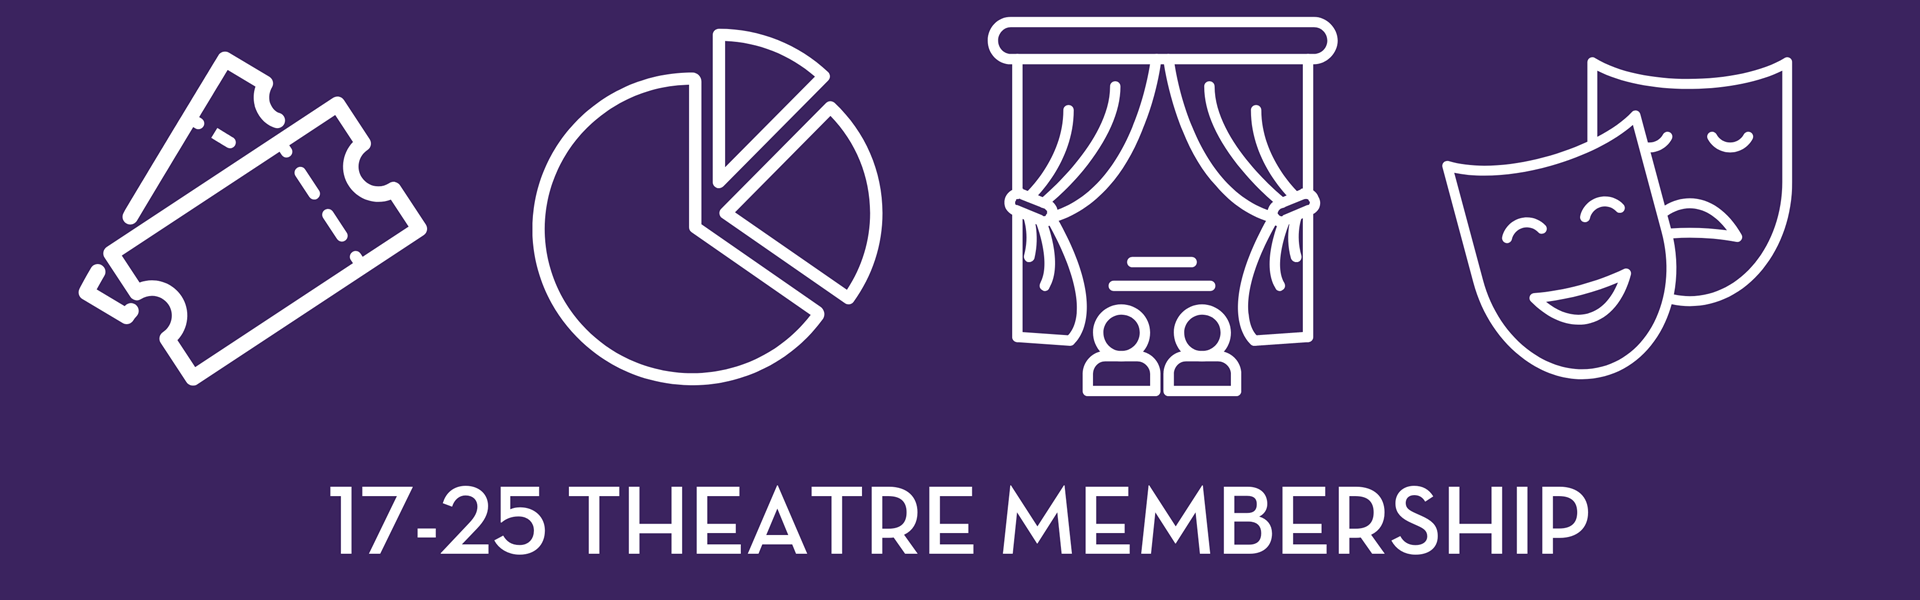 17-25 Theatre Membership